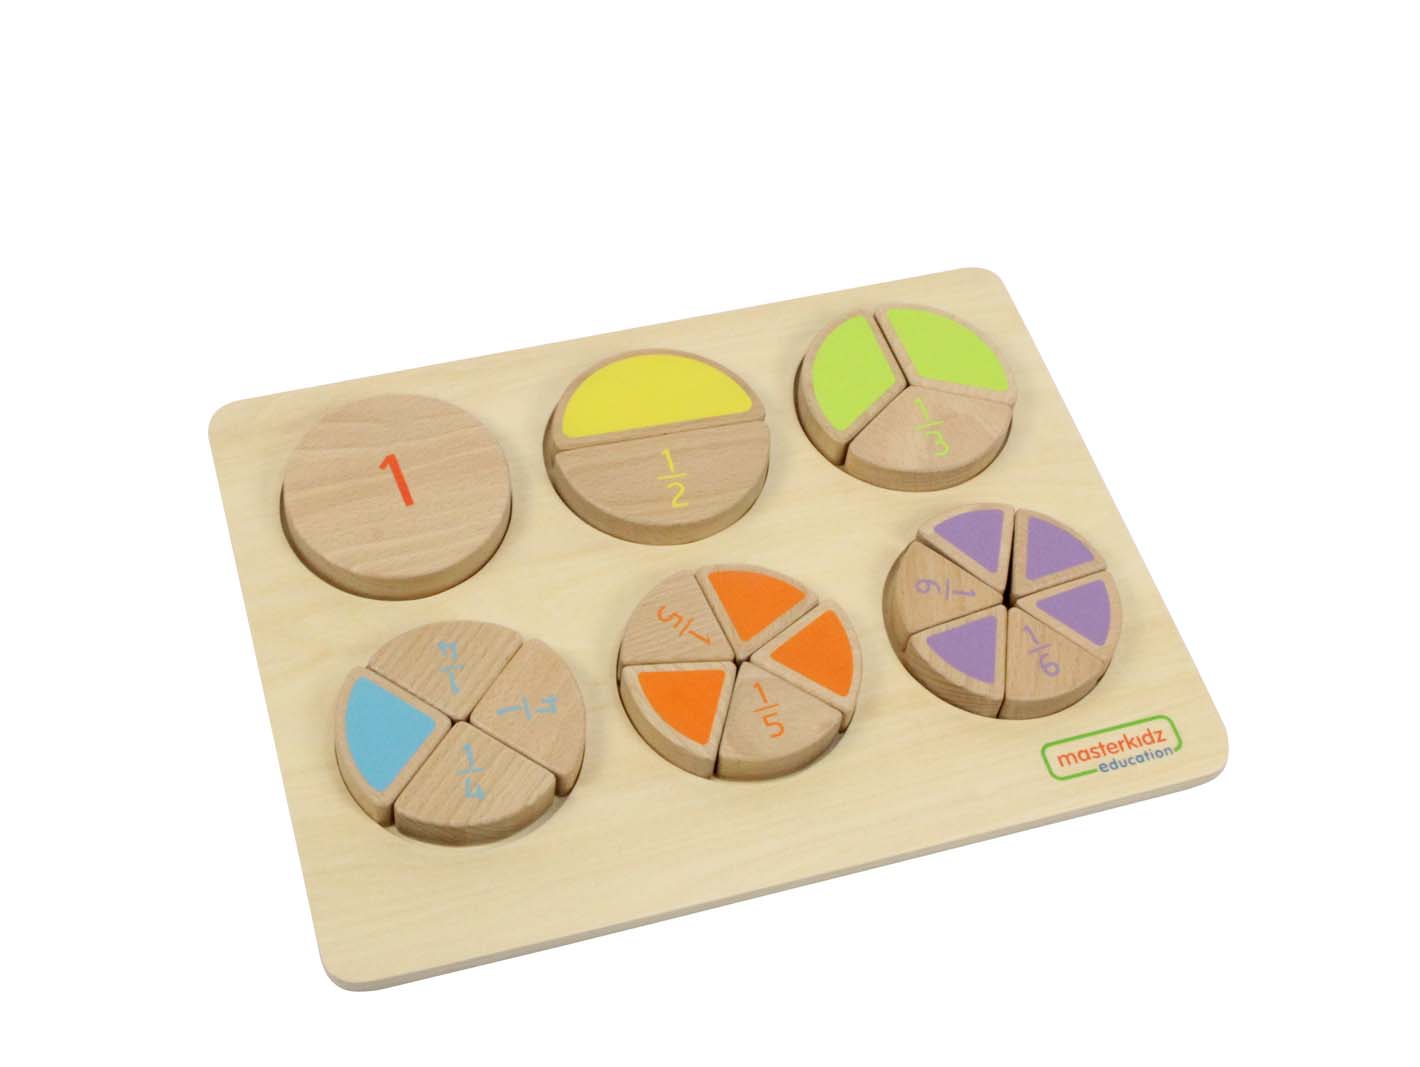 Bethd wood score learning board toys1